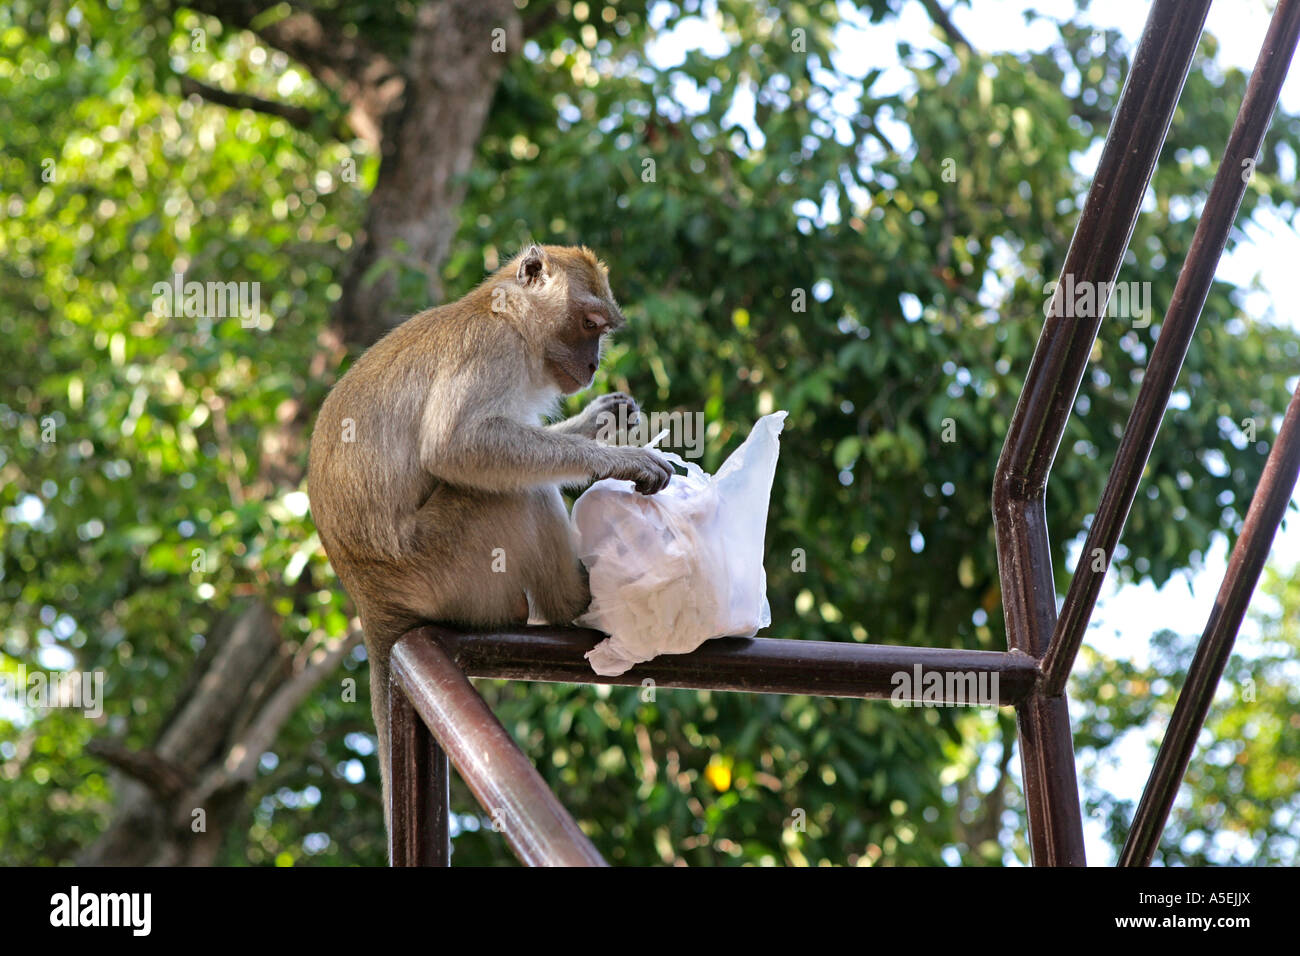 Thailand, monkeys in Park at Songklah Stock Photo